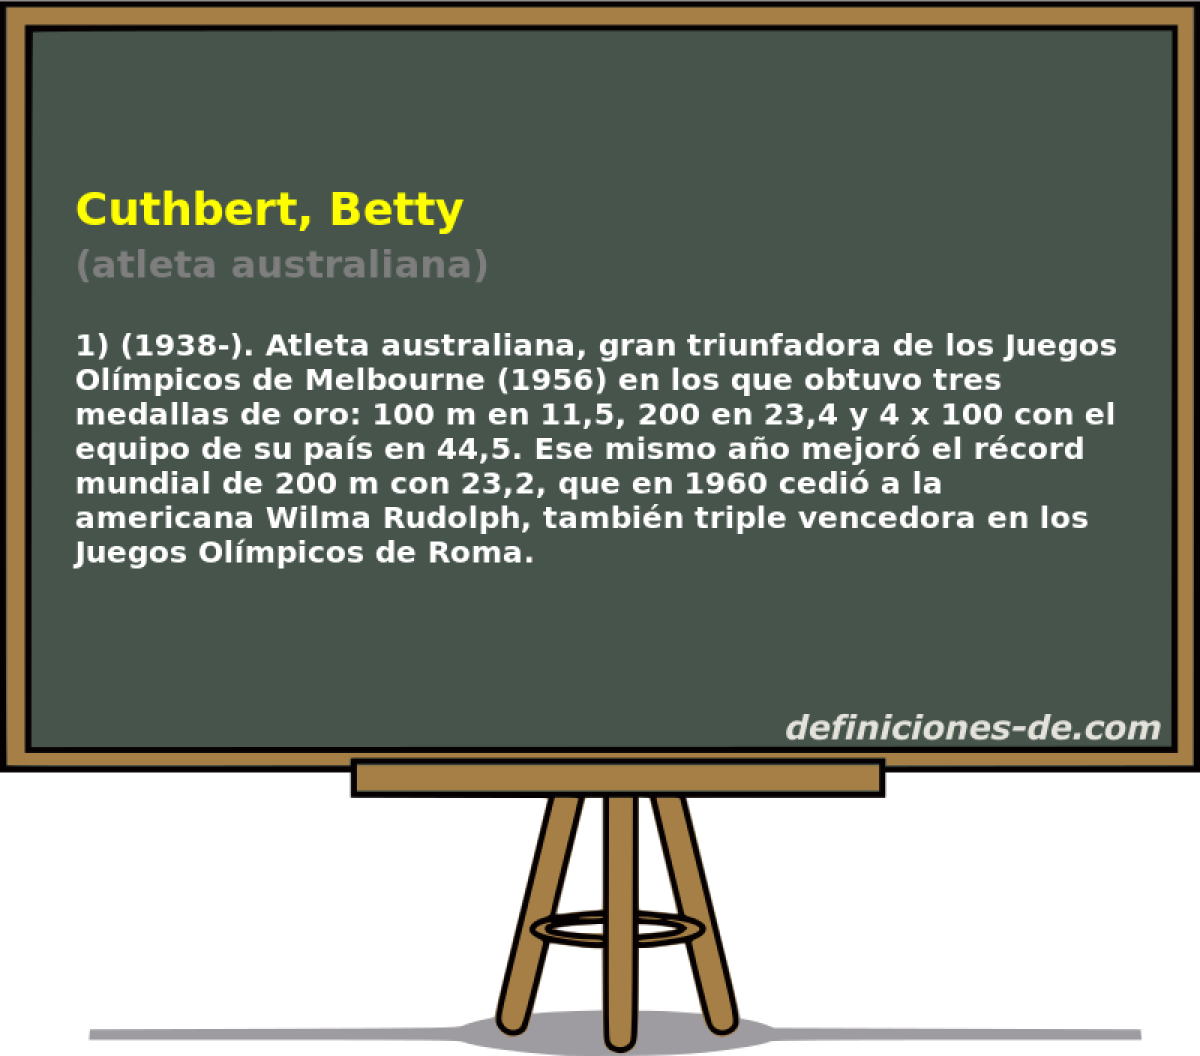 Cuthbert, Betty (atleta australiana)